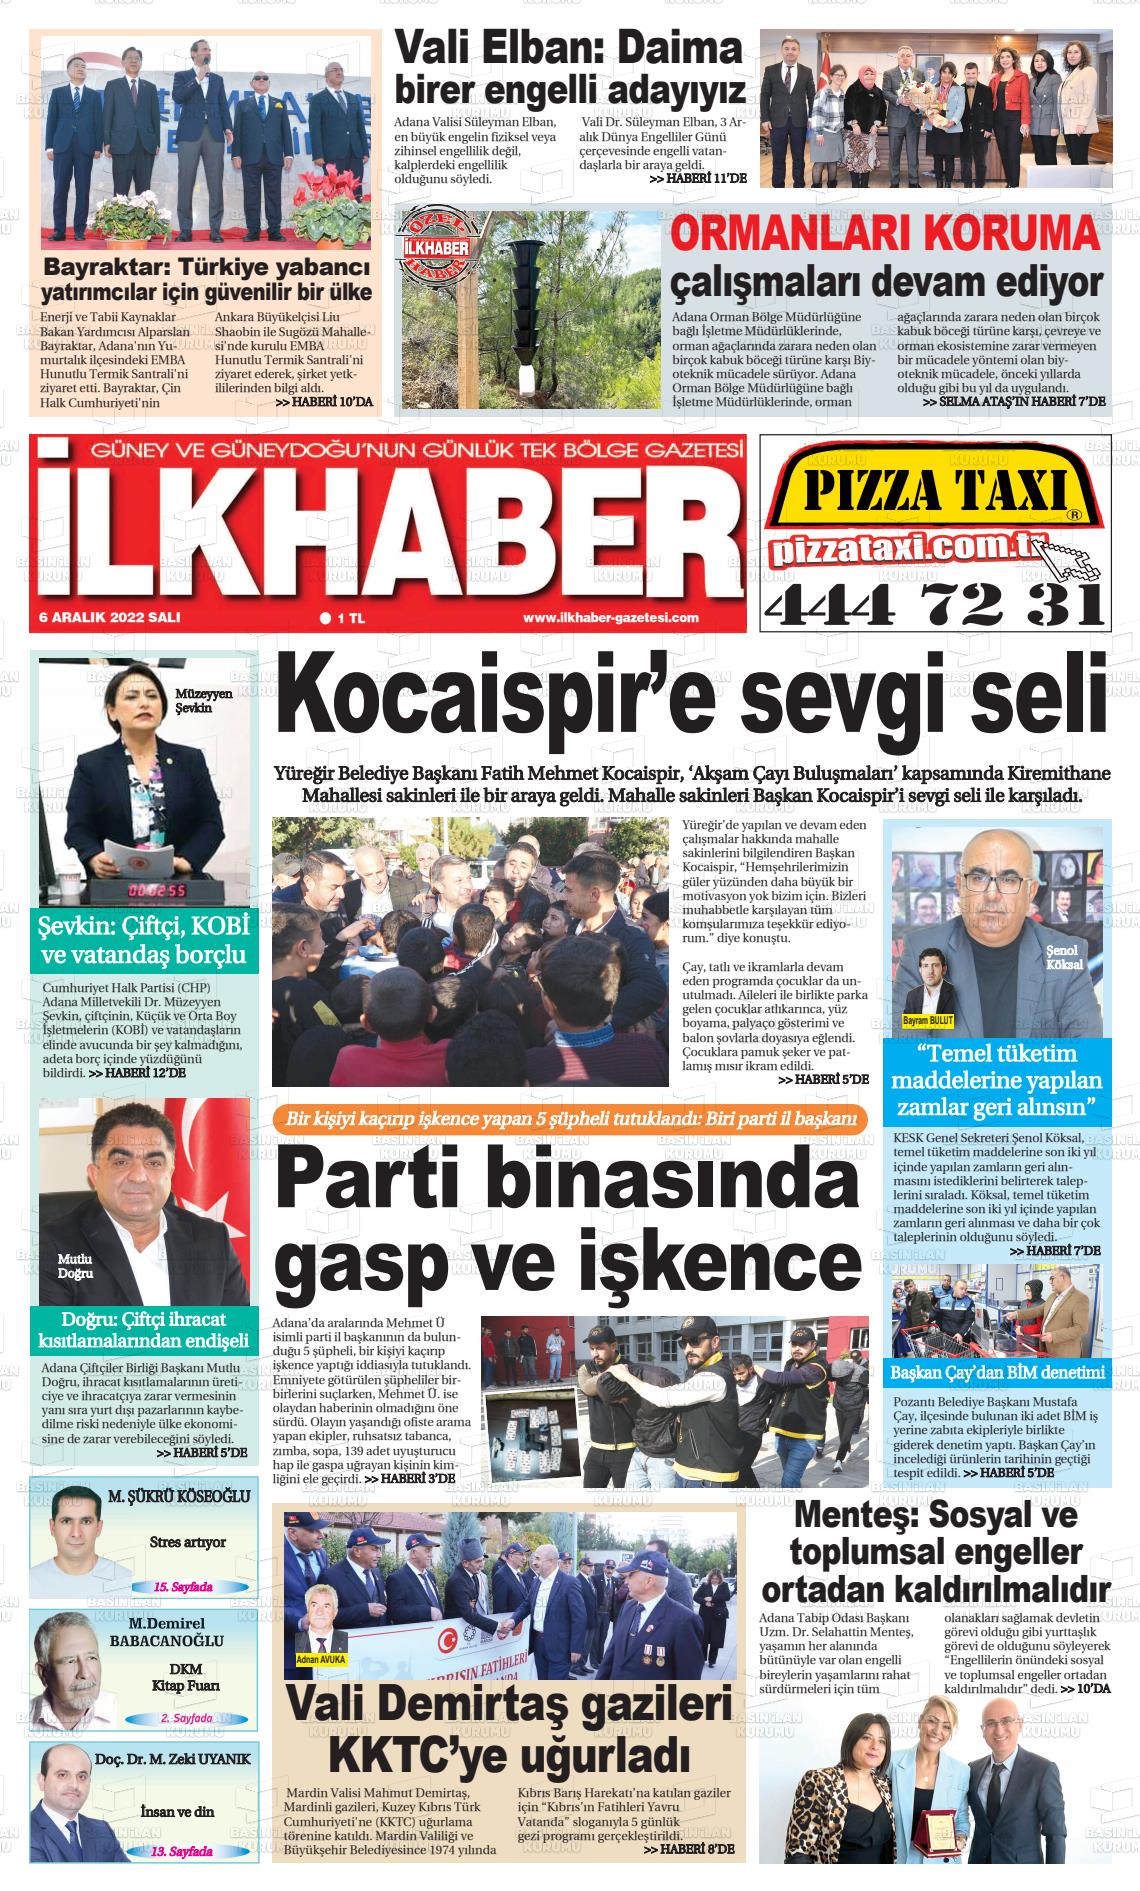 06 Aralık 2022 İlk Haber Gazete Manşeti